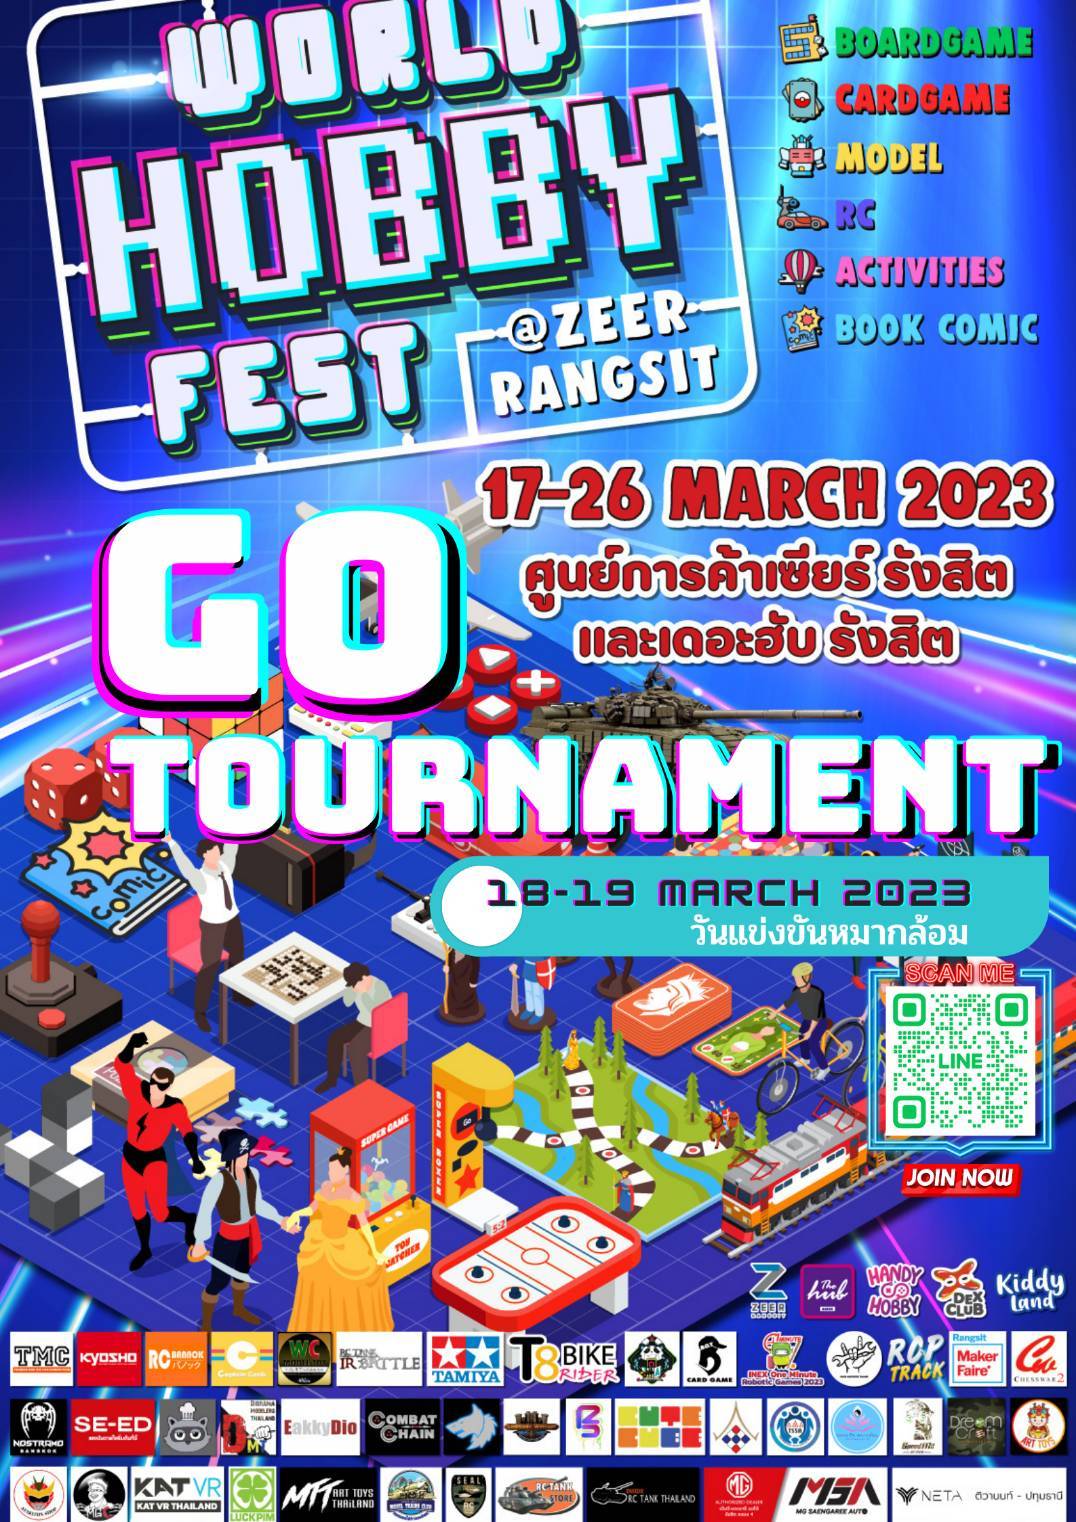 ขอเชิญสมัครร่วมการแข่งขันหมากล้อมในงาน World Hobby Fest Go Tournament 2023